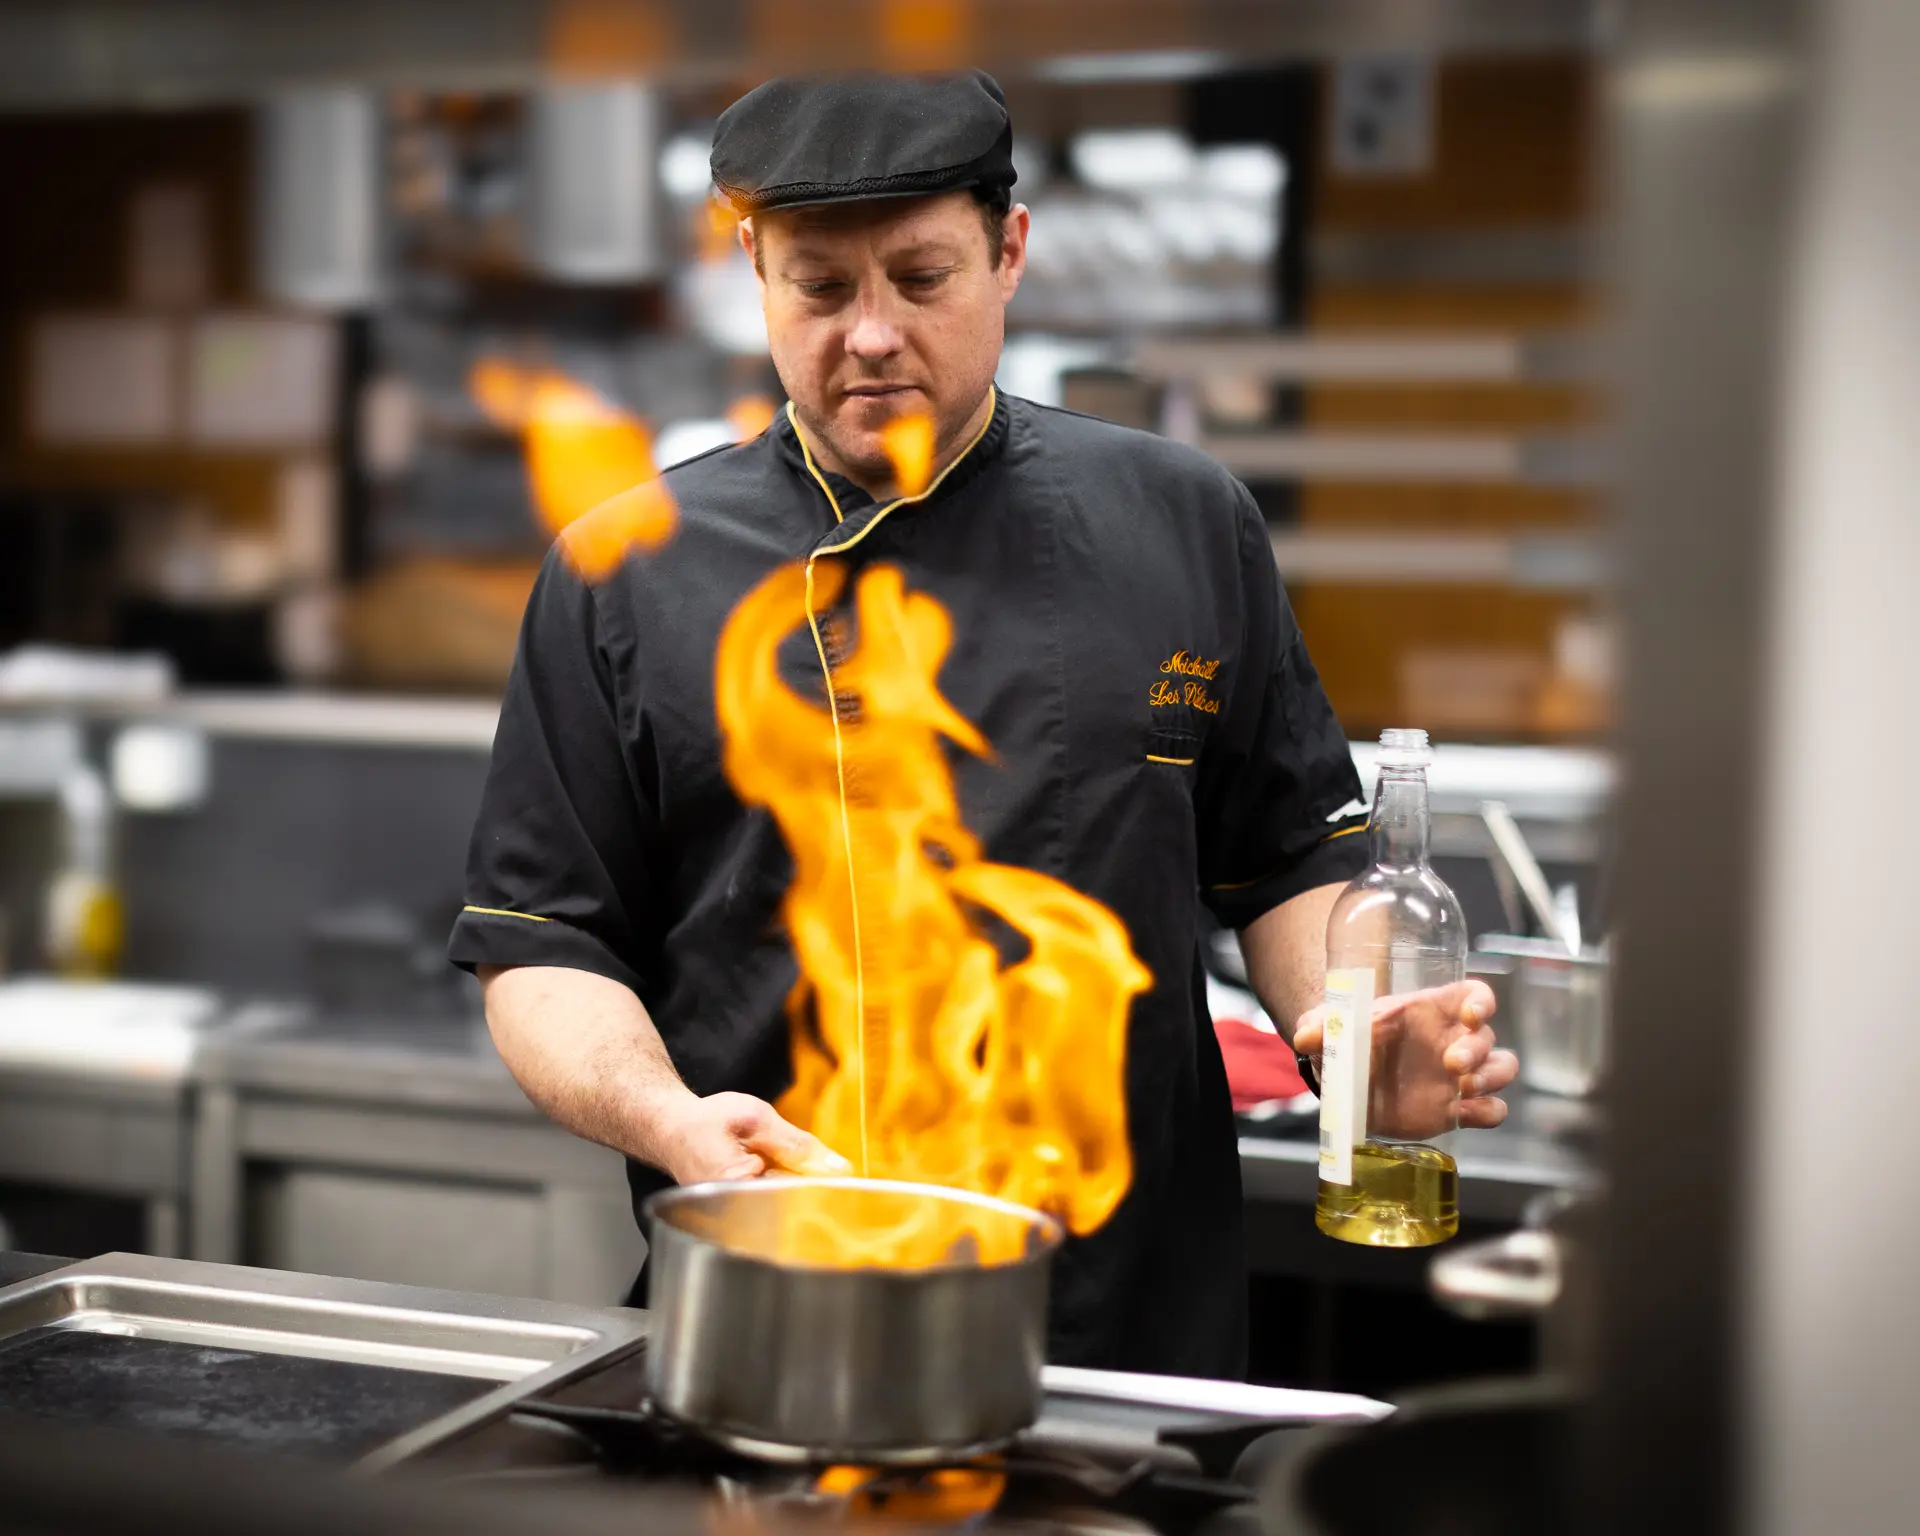 Chef cuisinier faisant flamber un plat dans les cuisines d'un restaurant